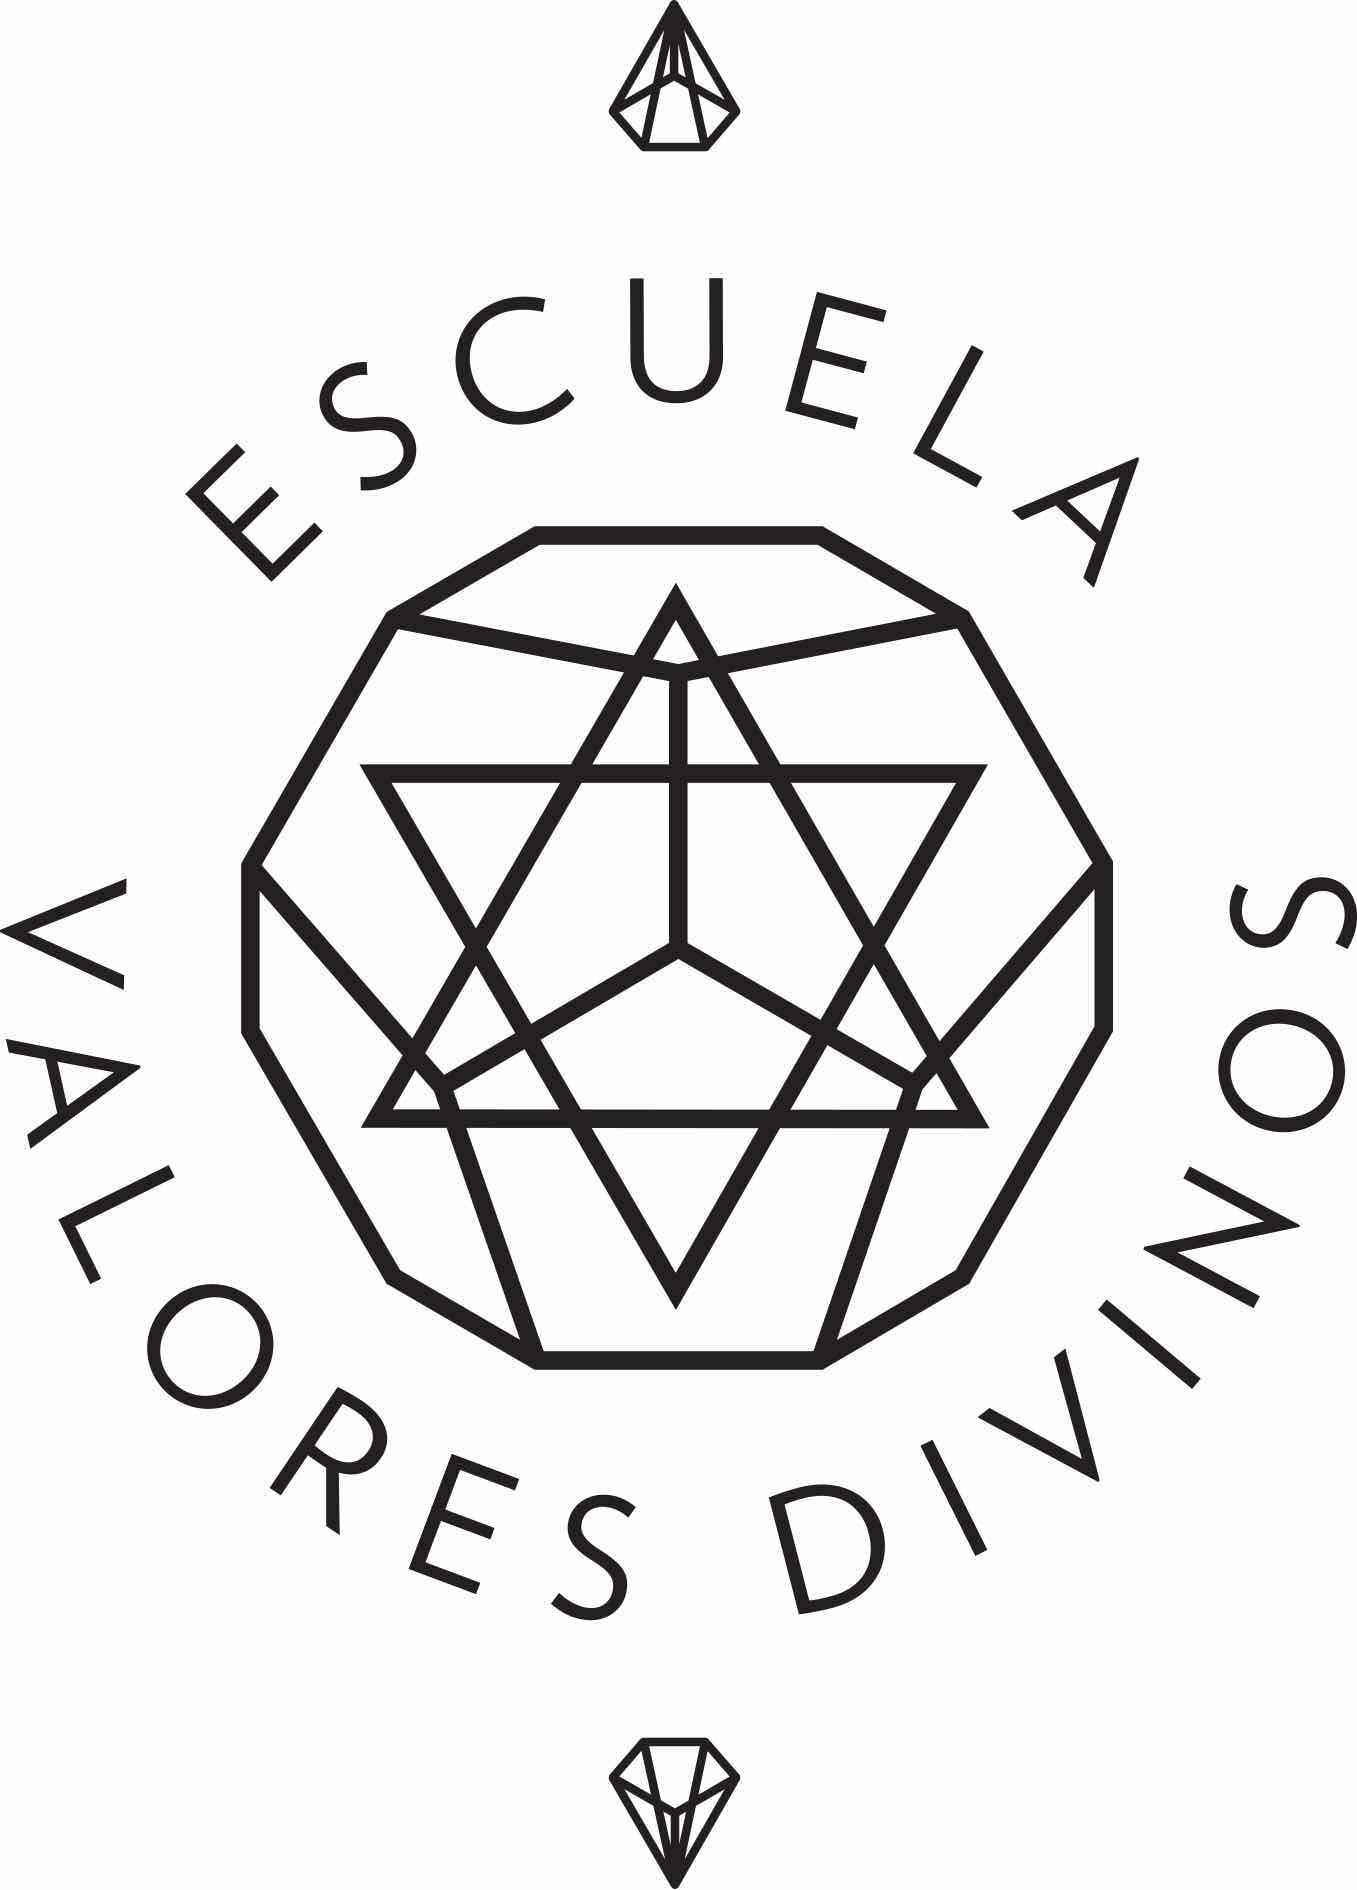 Escuela Valores Divinos (EVD) logo